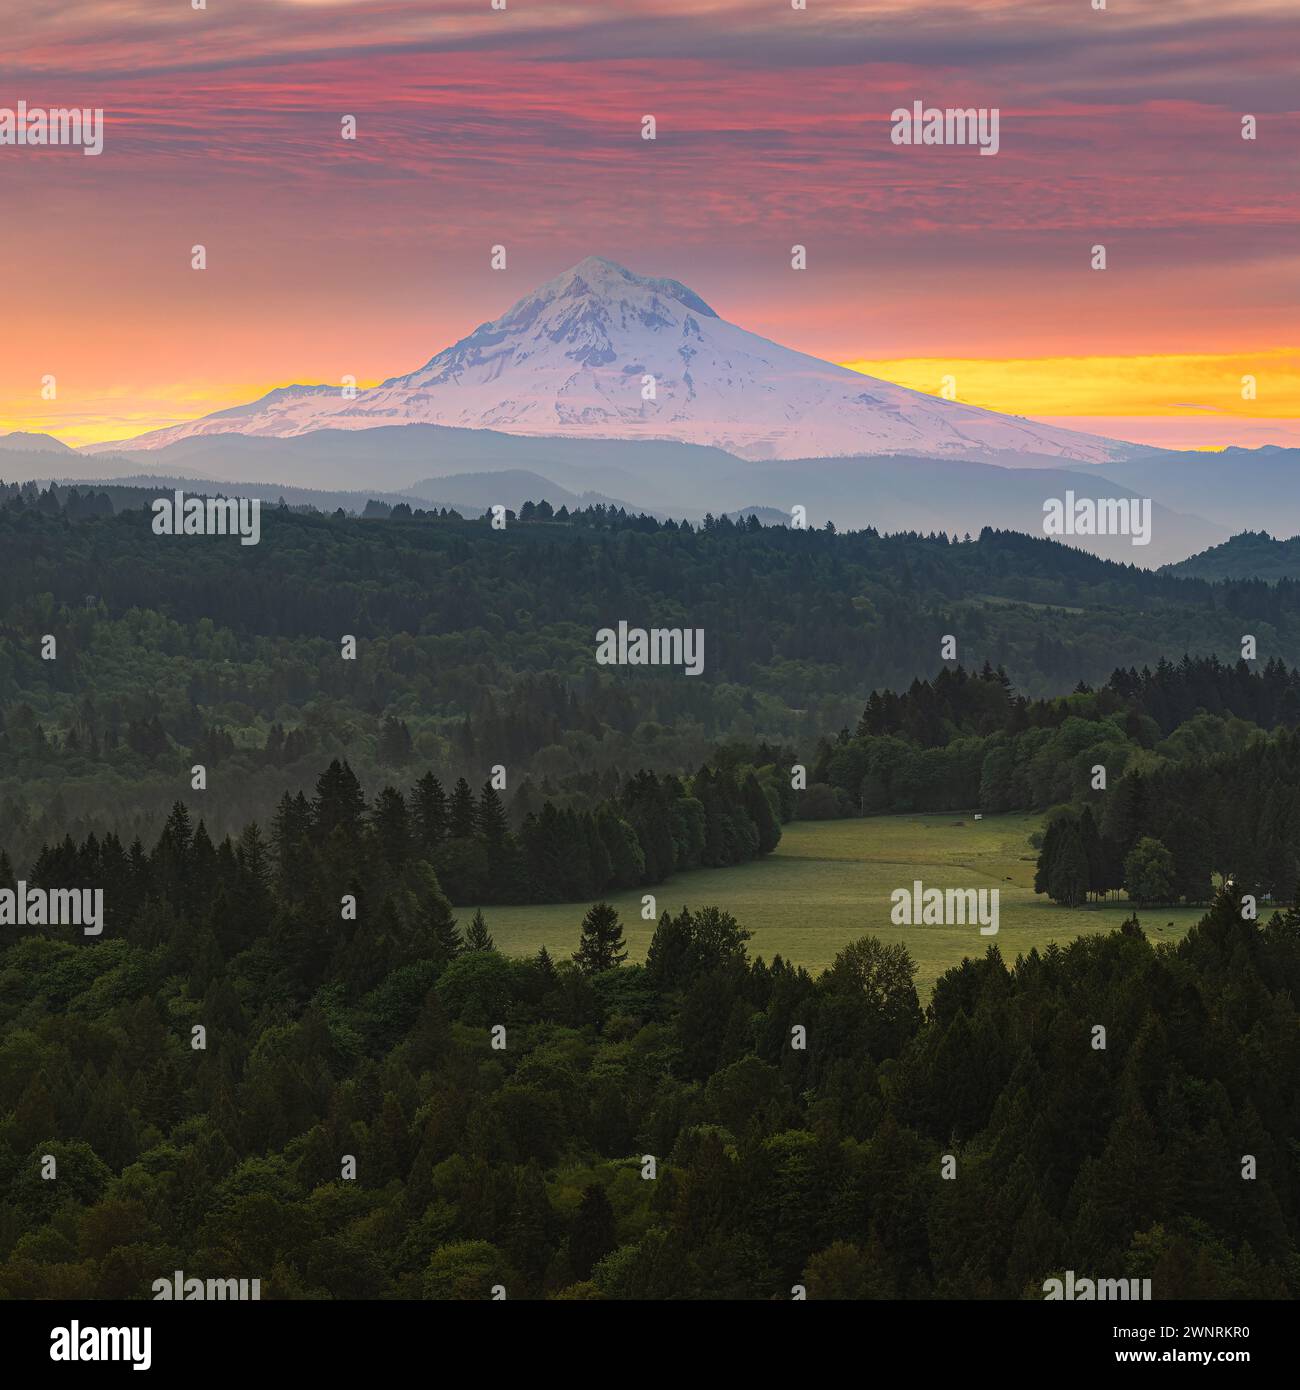 Ein quadratisches 1:1 Foto von einem herrlichen Sonnenaufgang mit Blick in Richtung Mount Hood, einem Stratovulkan im US-amerikanischen Nordwesten von Oregon. Stockfoto